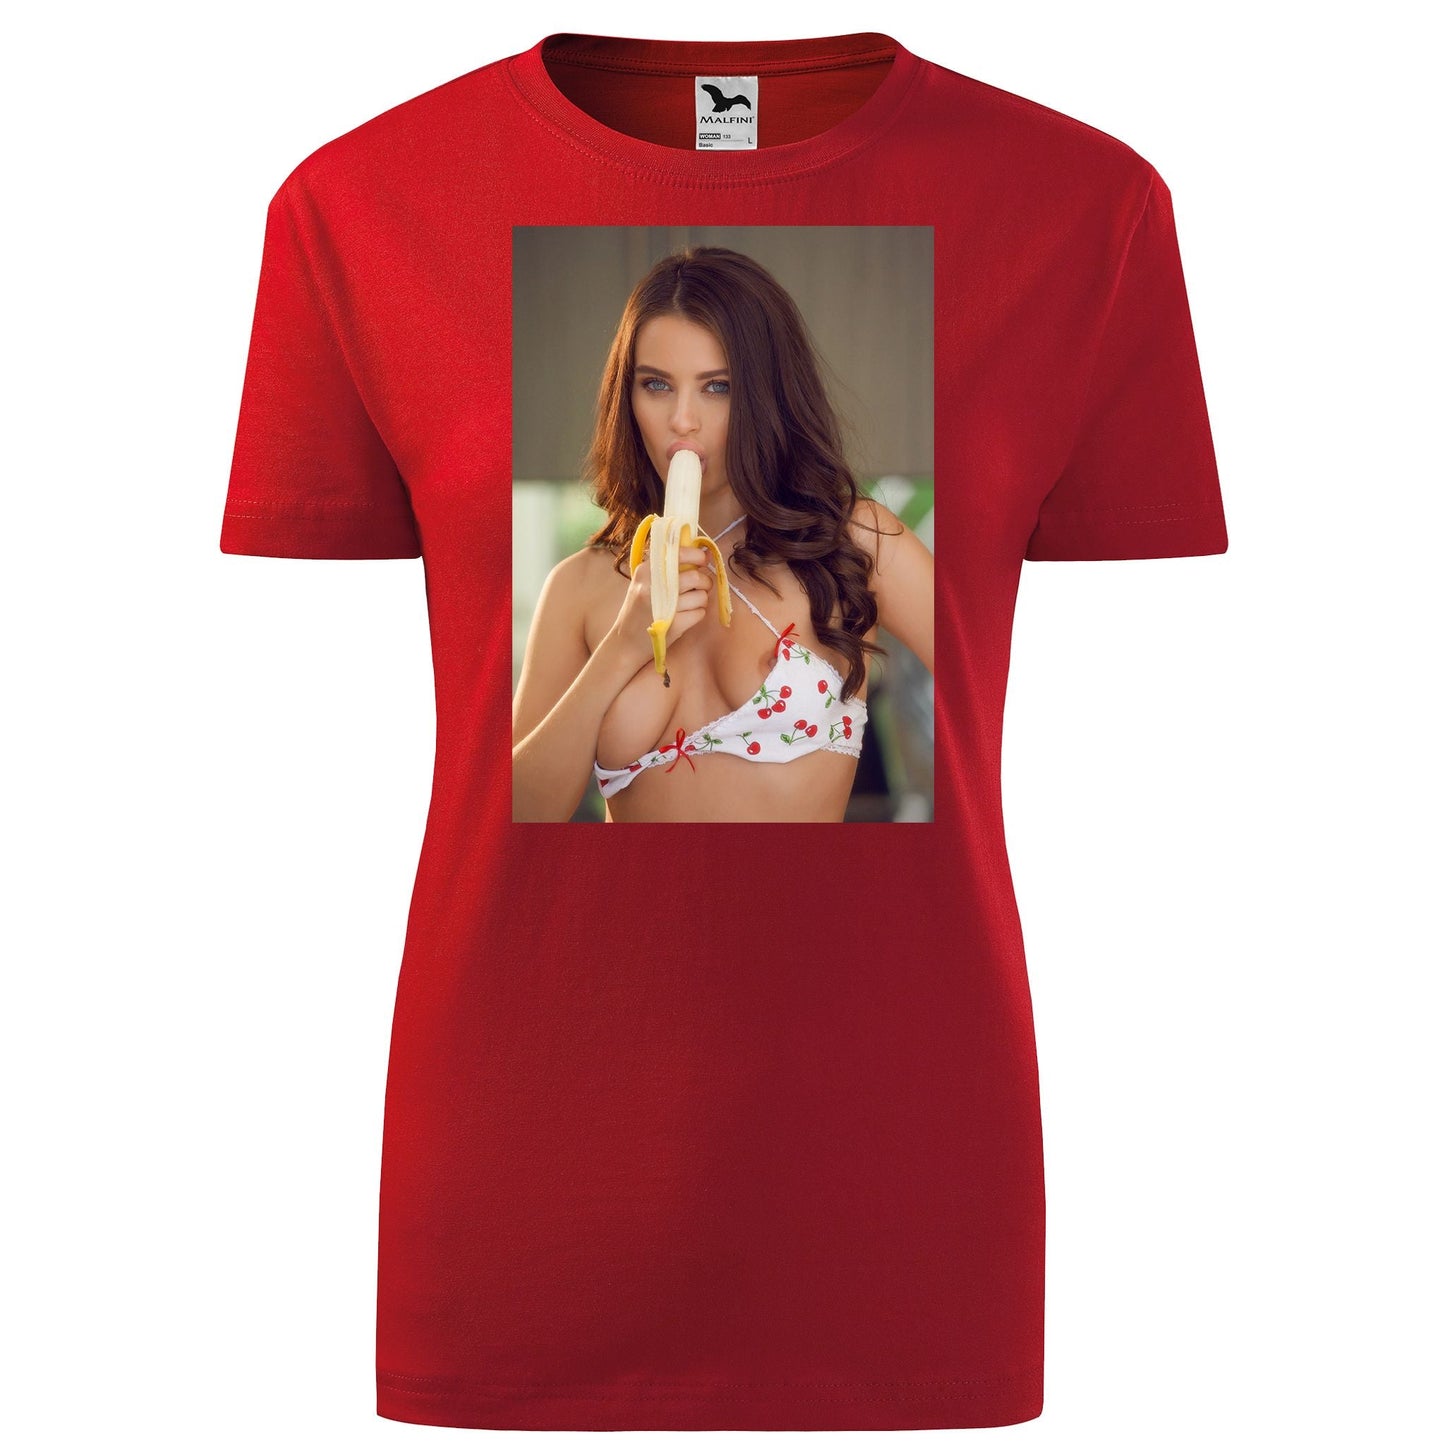 Lana rhoades t-shirt - rvdesignprint